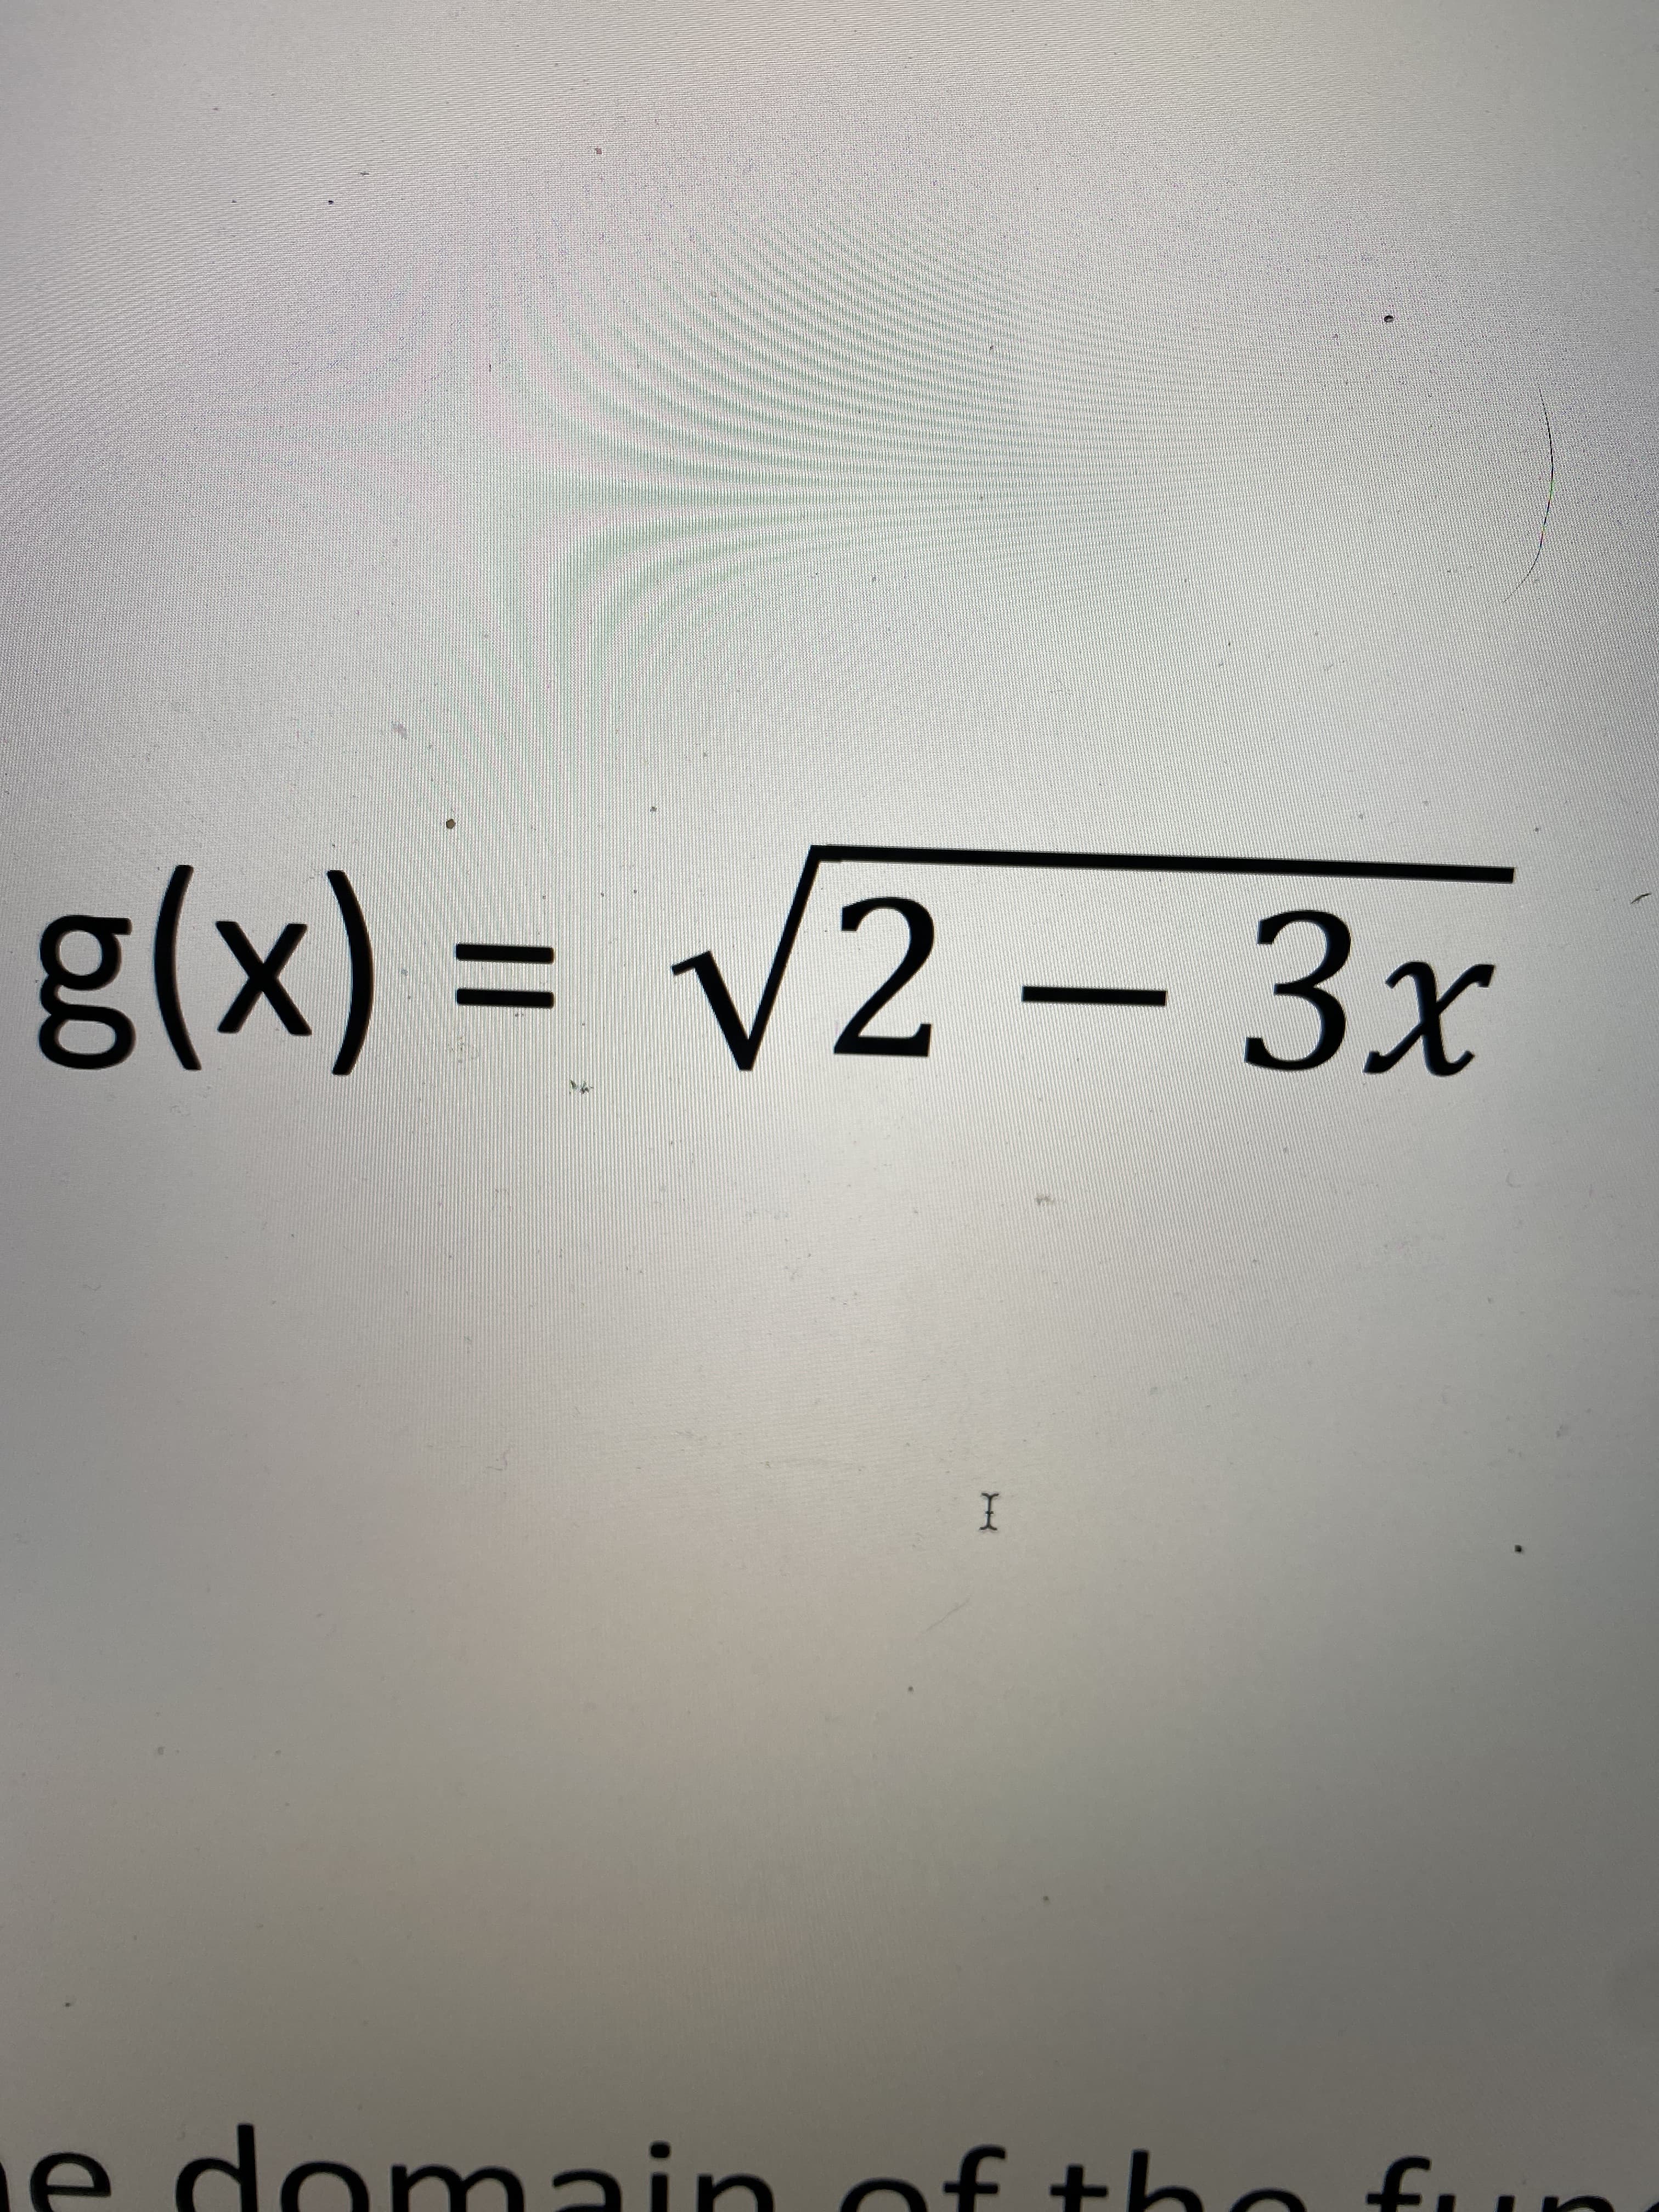 g(x) = v2 – 3x
%3D
